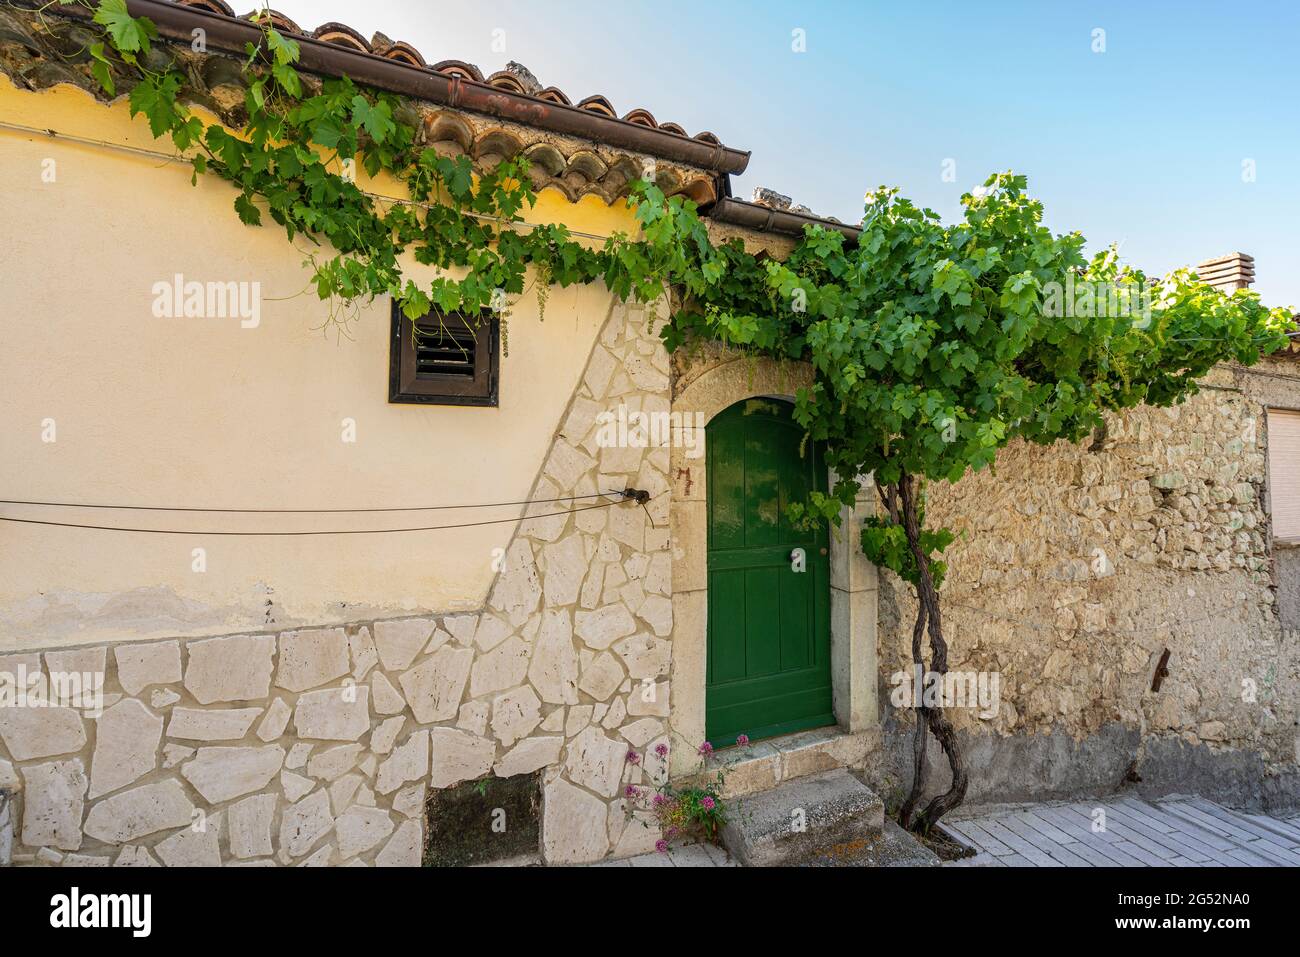 Porte verte d'une maison de campagne avec une vigne luxuriante et verte. Murs en pierre. Cerro al Volturno, province d'Isernia, Molise, Italie, Europe Banque D'Images